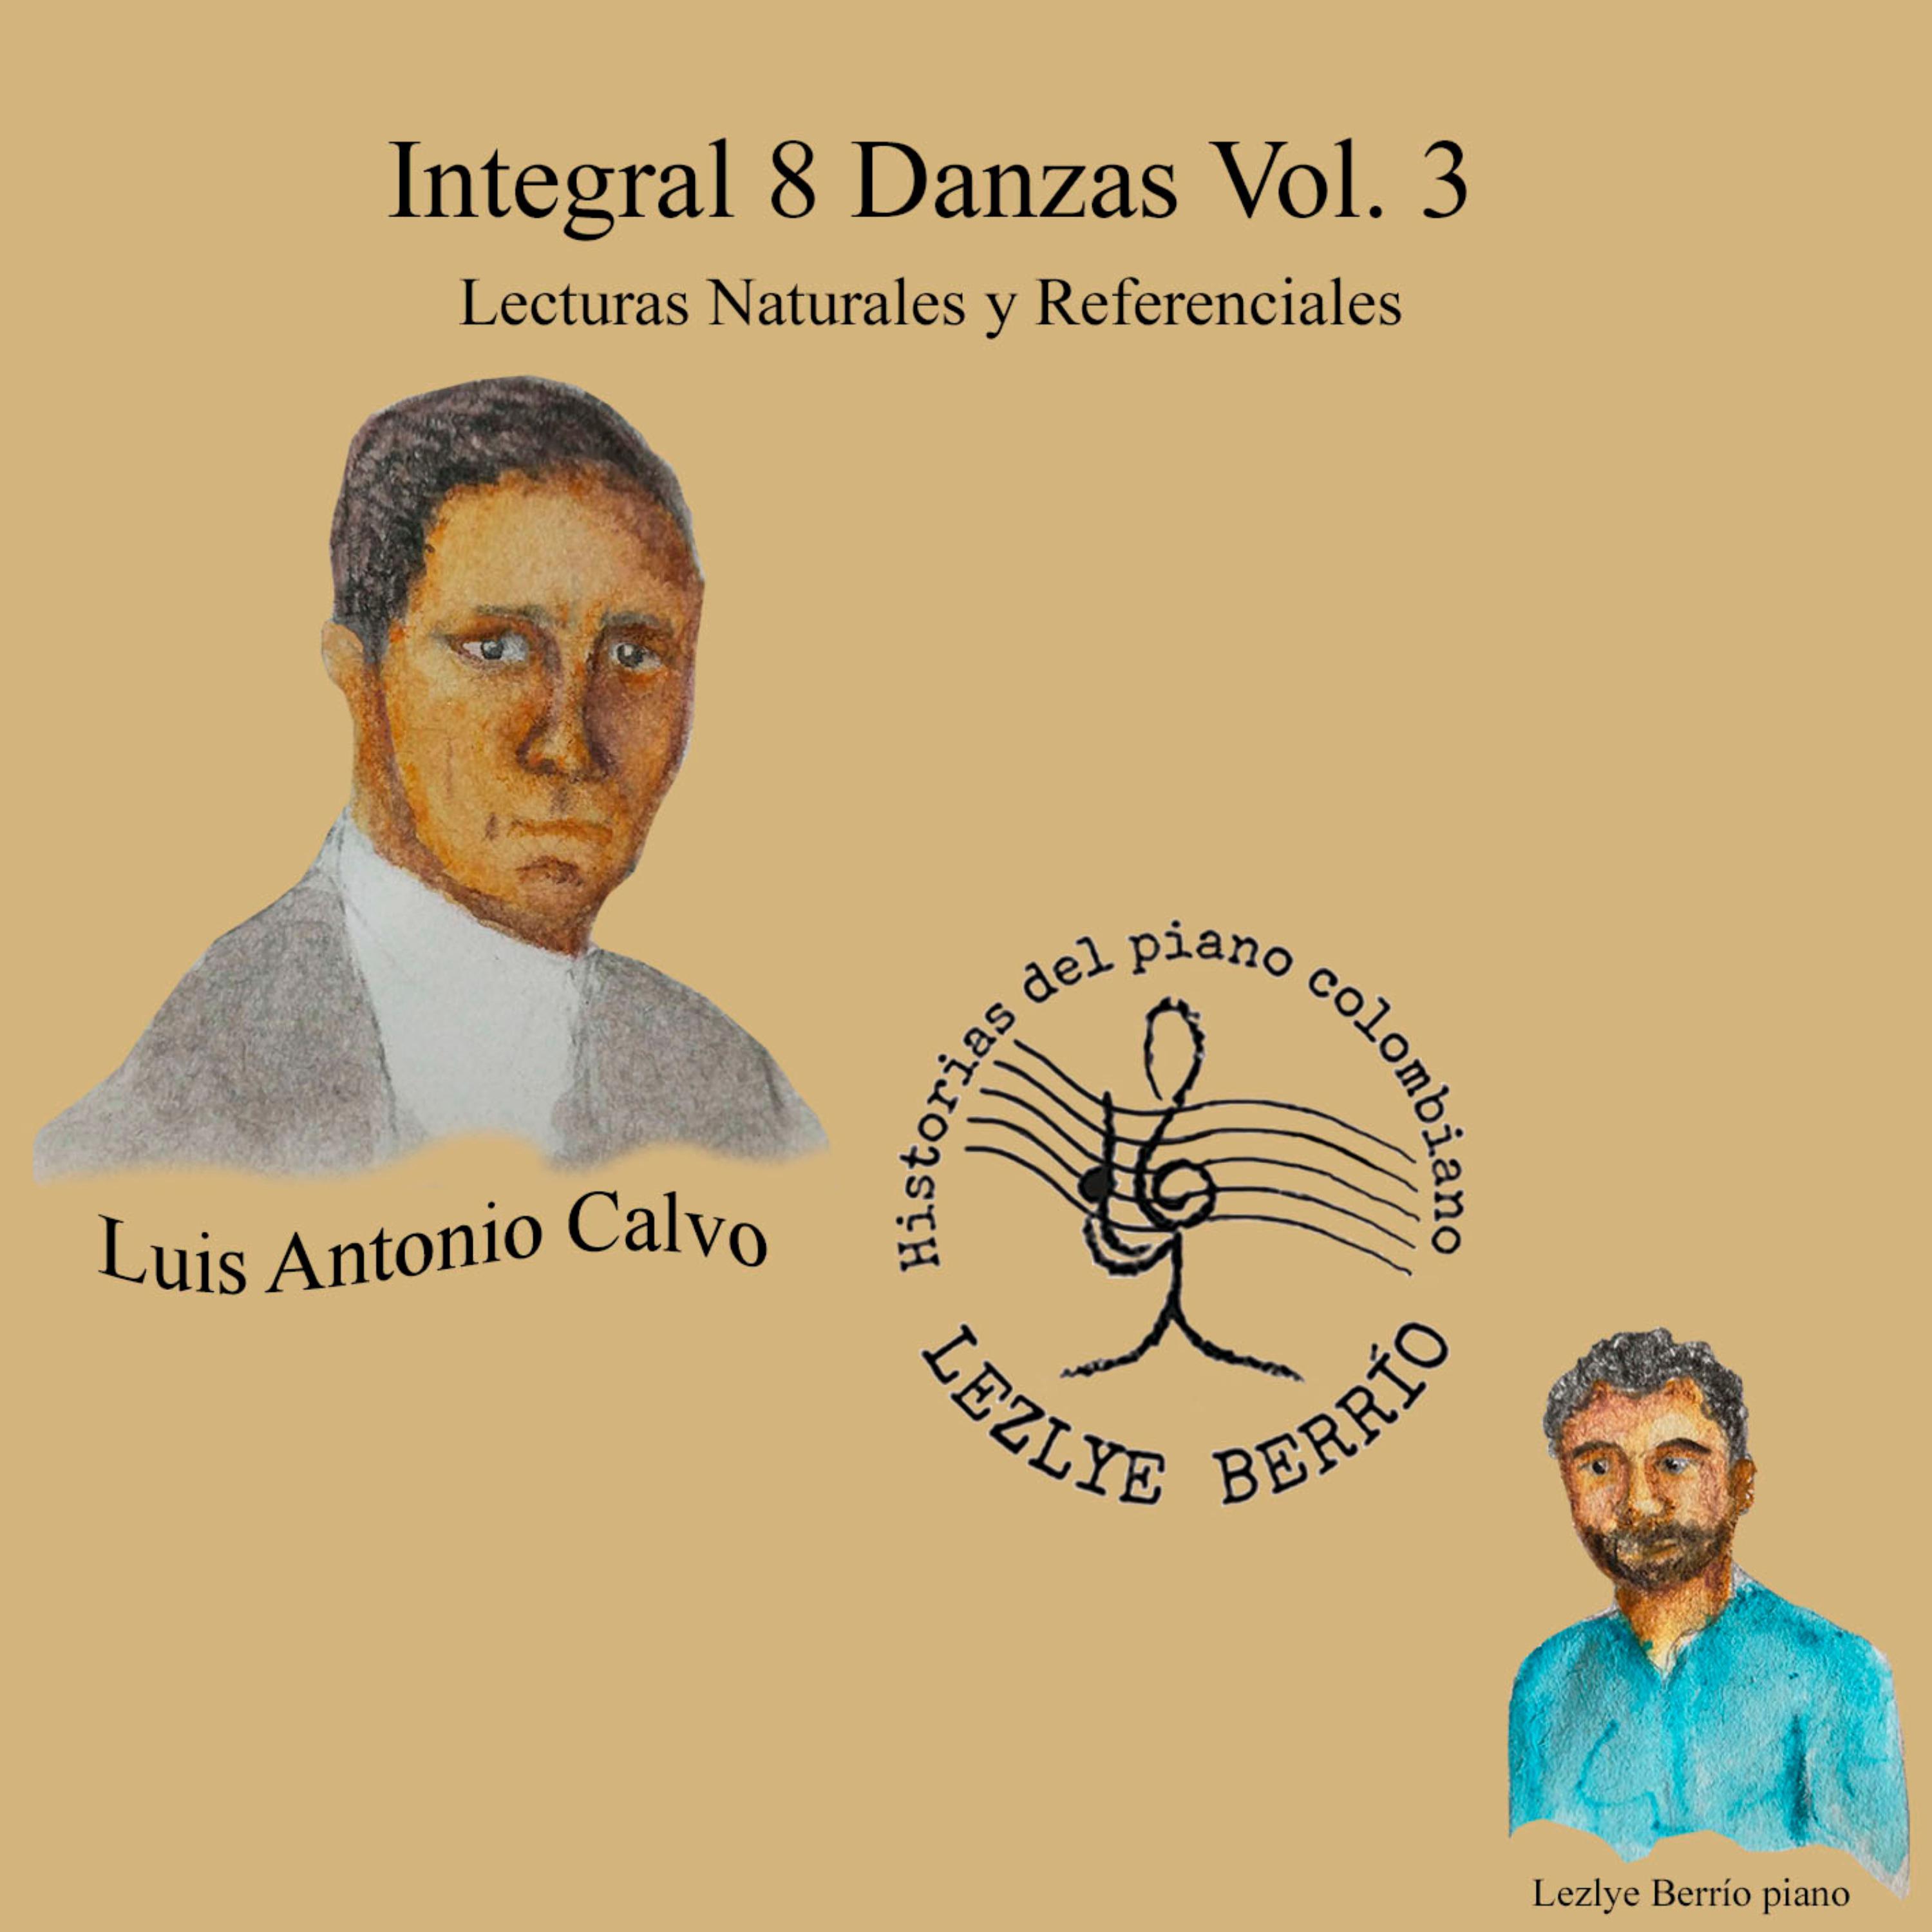 Постер альбома Historias del Piano Colombiano, Lecturas Naturales y Referenciales, Integral Luis Antonio Calvo 8 Danzas Géneros, Vol. 3